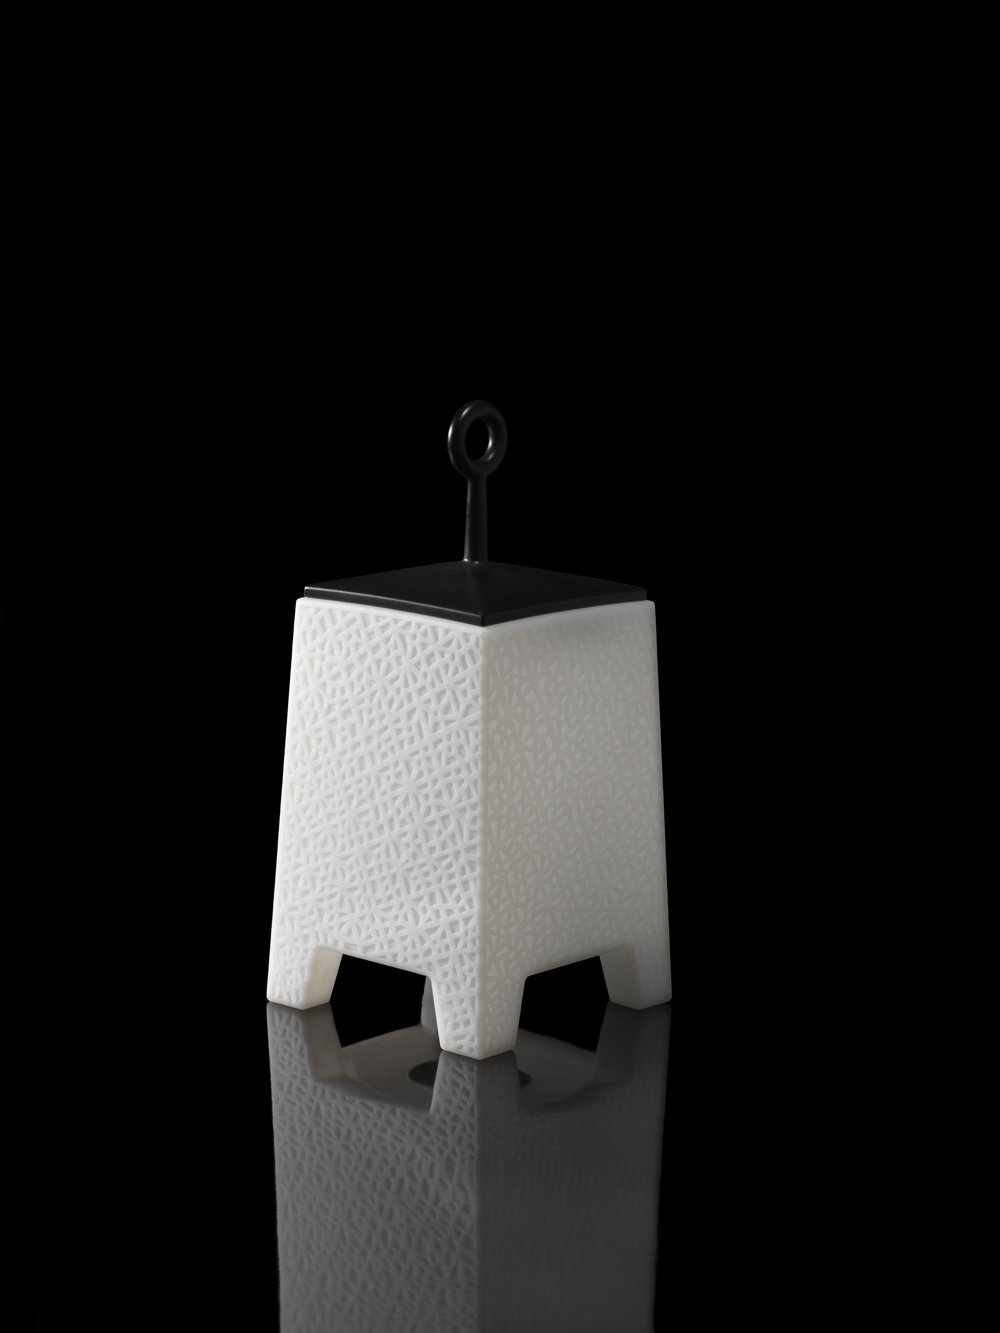 Lampara Mora pequeña en blanco diseñada por Javier Mariscal producida por Vondom